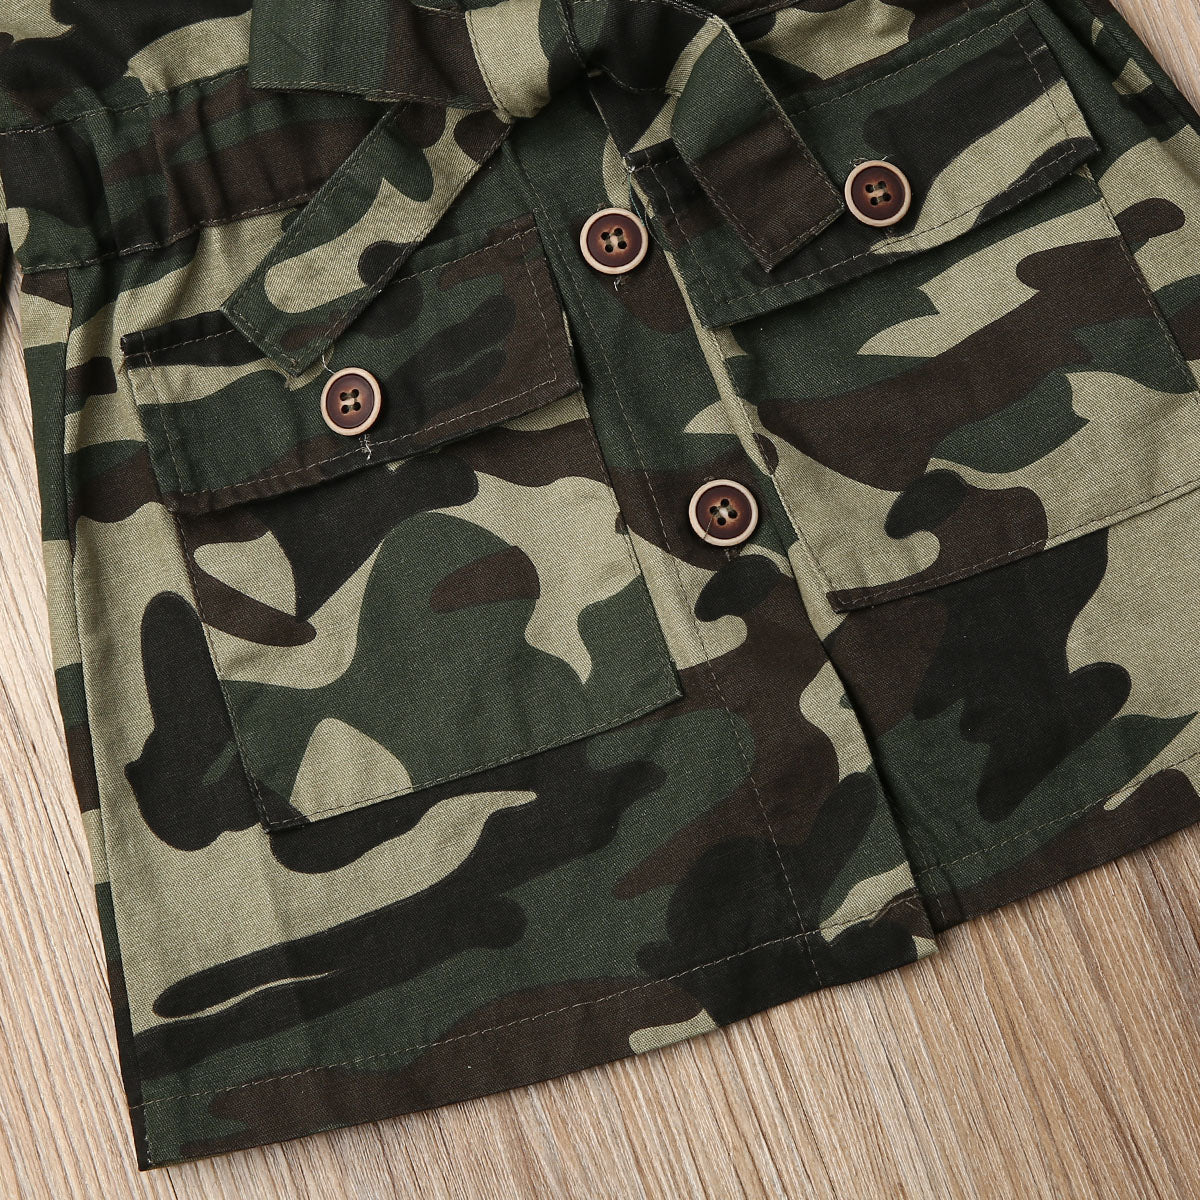 Girls Camouflage Jacket Coat 2-6yrs